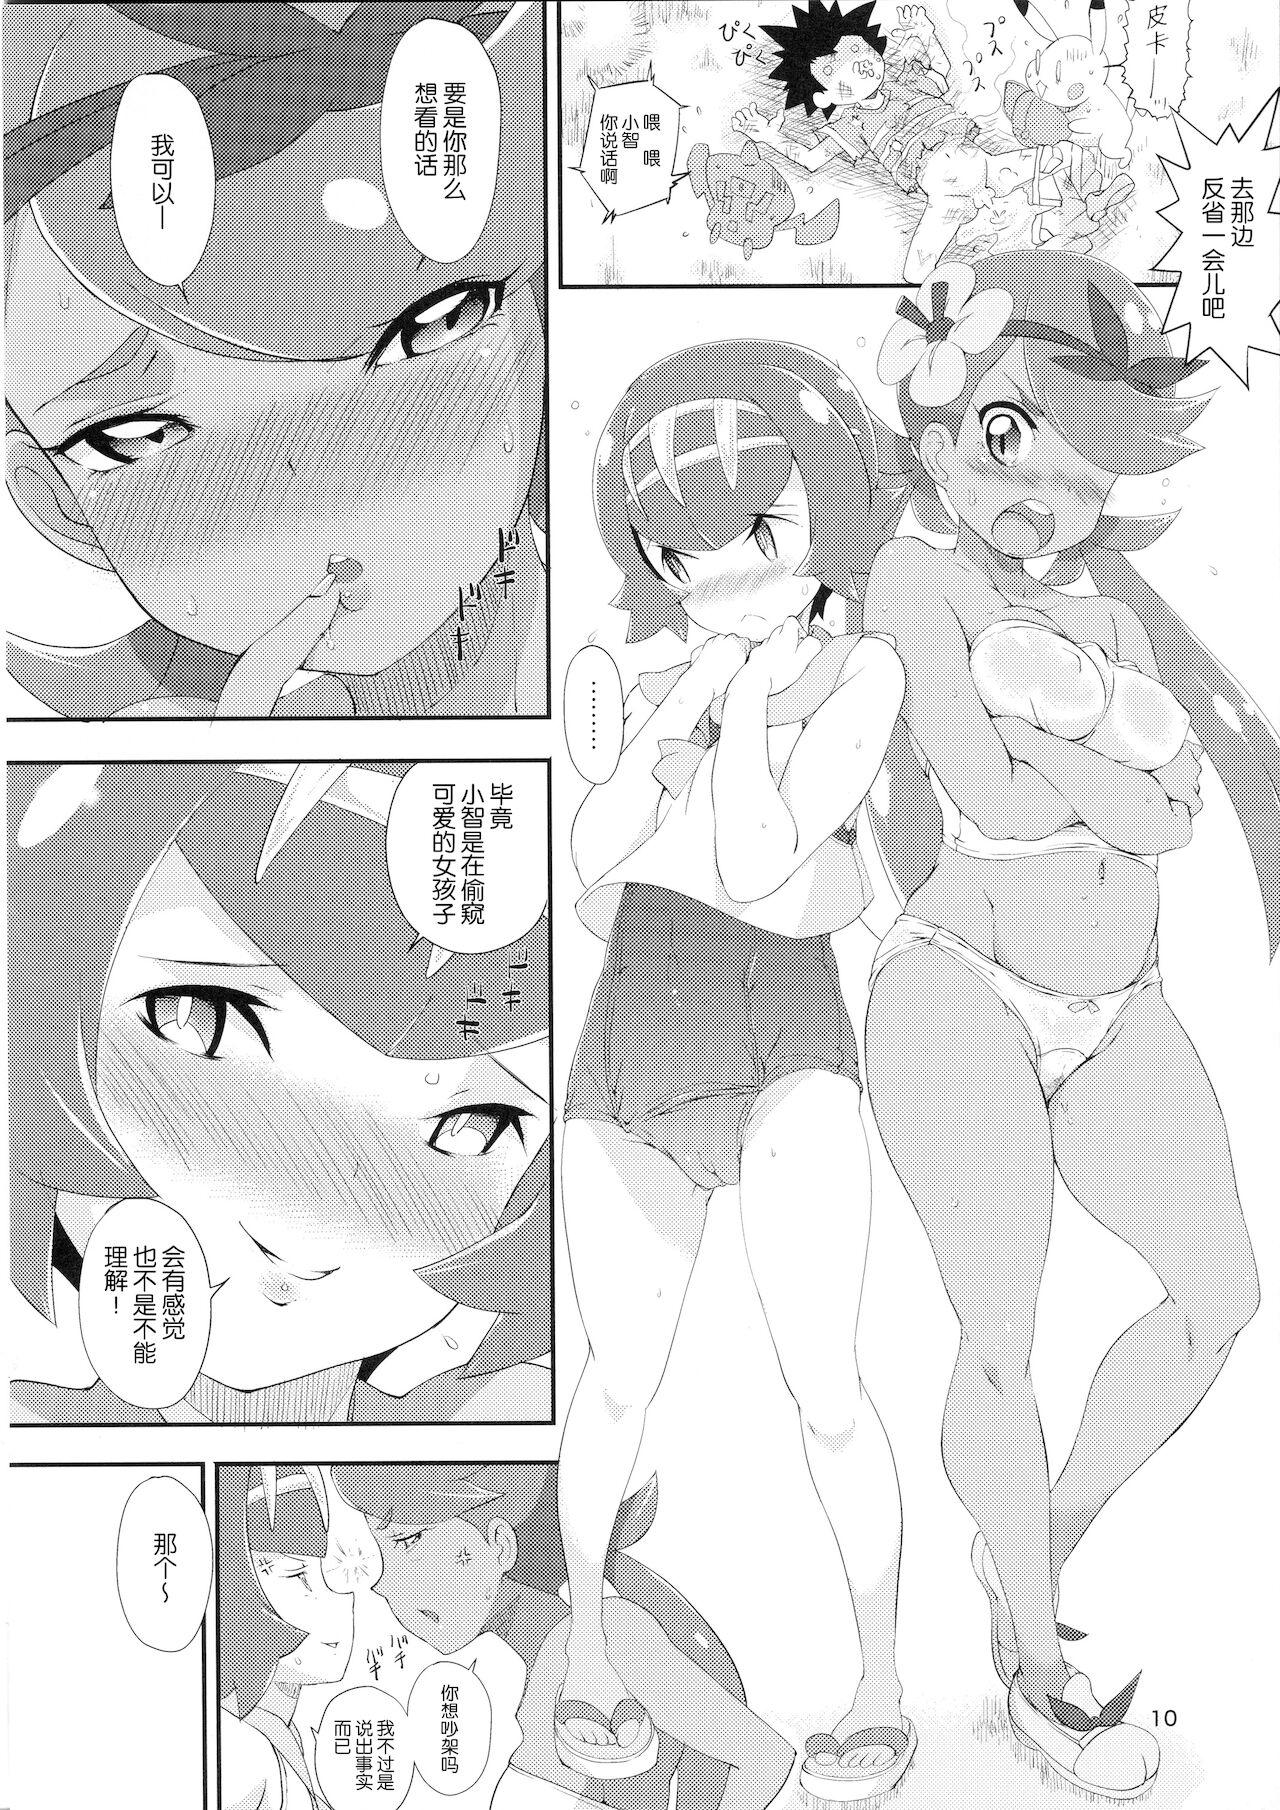 Moreno Haisetsu Shoujo Series Alola no Shoujo-tachi - Pokemon | pocket monsters Chaturbate - Page 9